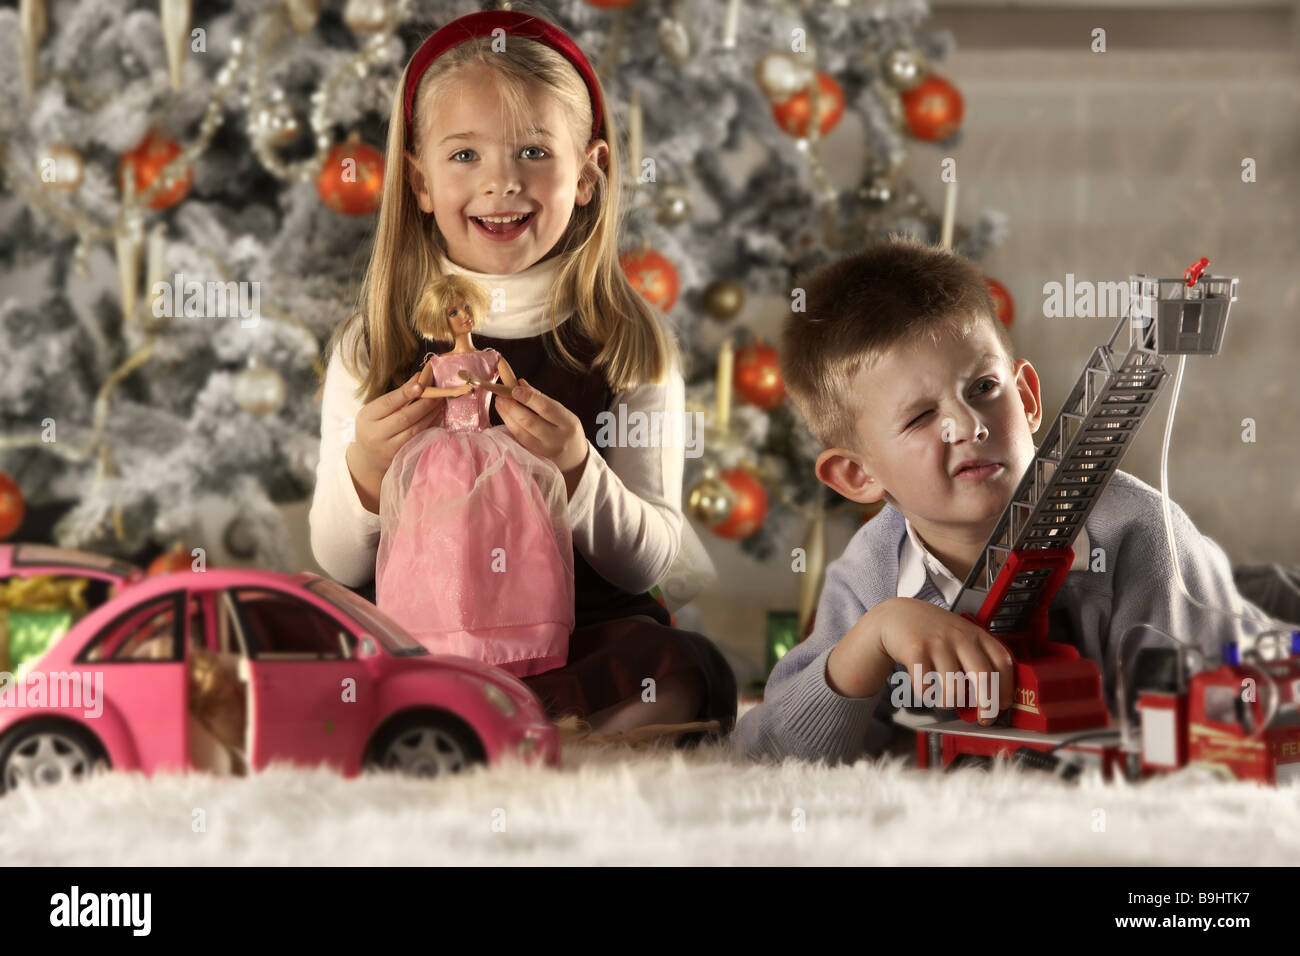 Weihnachten-Geschwister Teppich sitzen Lügen, dass Spielzeug Hintergrund Weihnachtsbaum Unschärfe Serie Leute Kinder 5-7 Jahre zwei Mädchen spielt Stockfoto